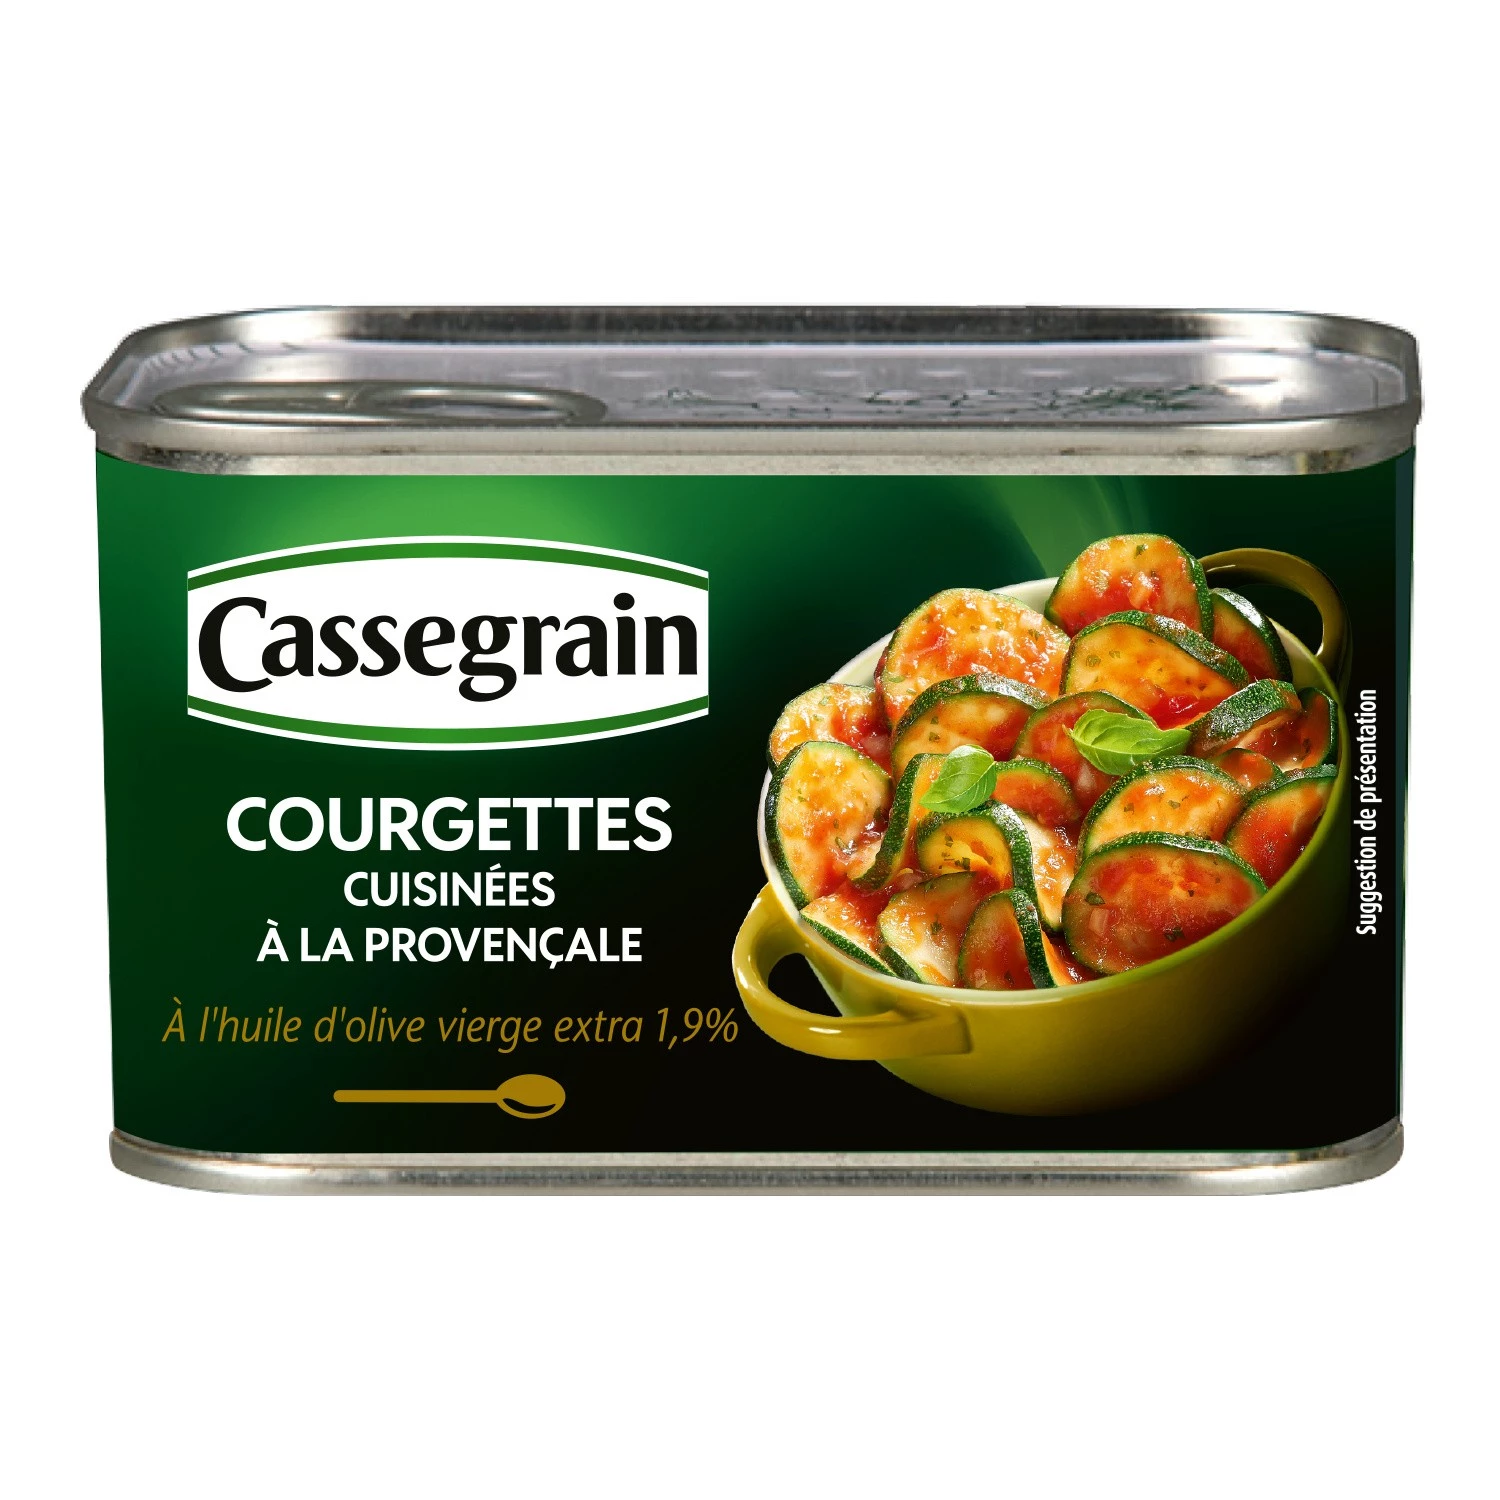 Courgettes Cuisinée à La Provençale; 375g - CASSEGRAIN